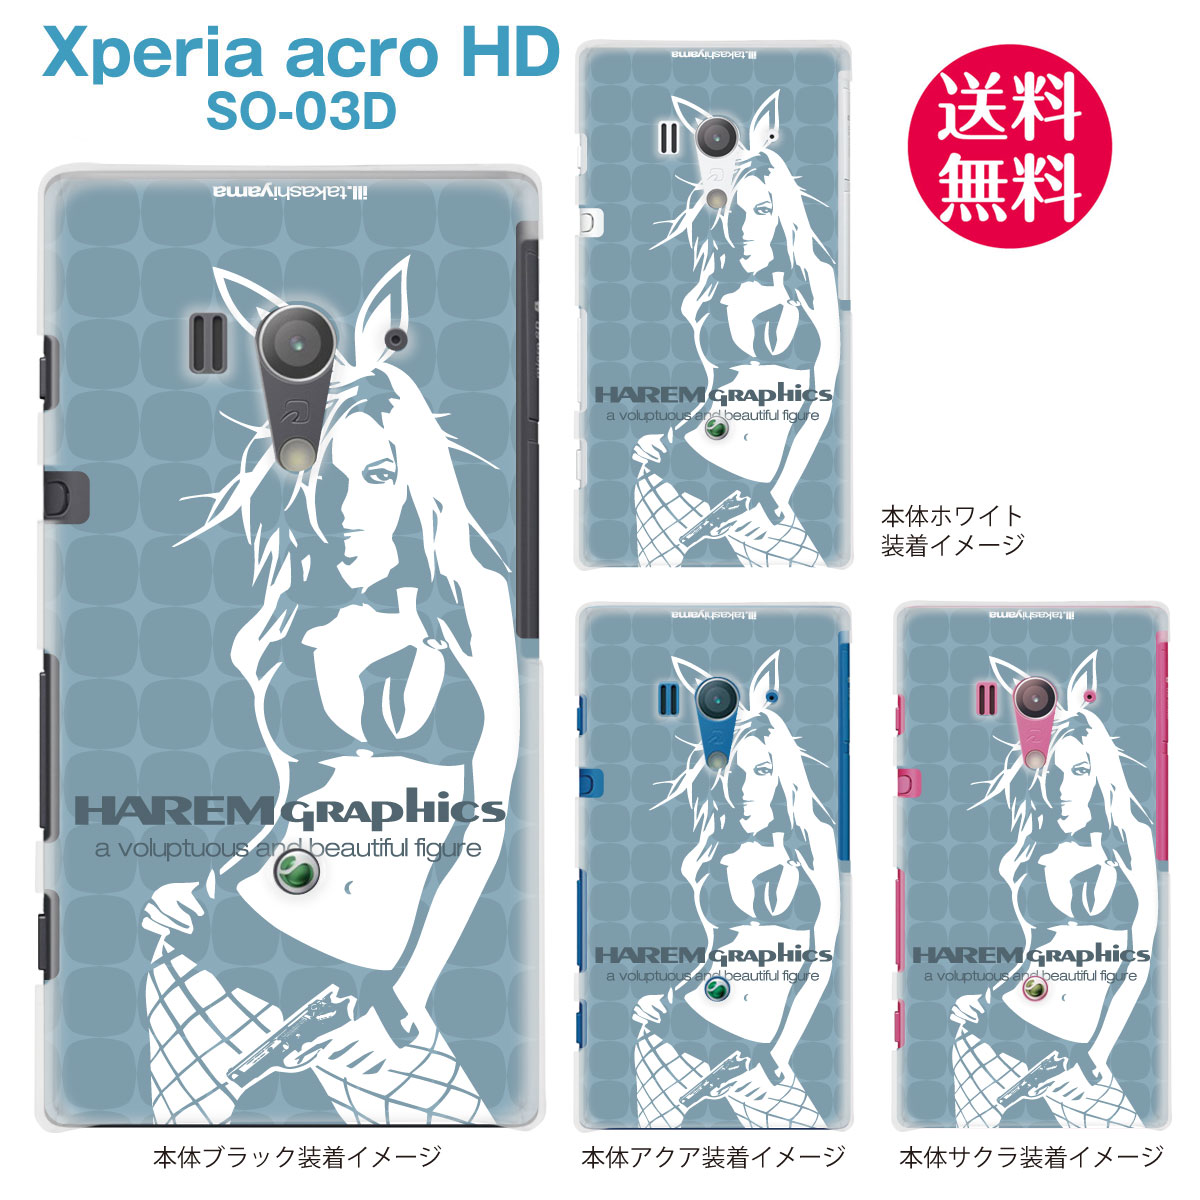 【HAREM GRAPHICS】【Xperia acro HD SO-03D】【docomo】【au】【IS12S】【ケース】【カバー】【スマホケース】【クリアケース】 hgx-so03d-024f